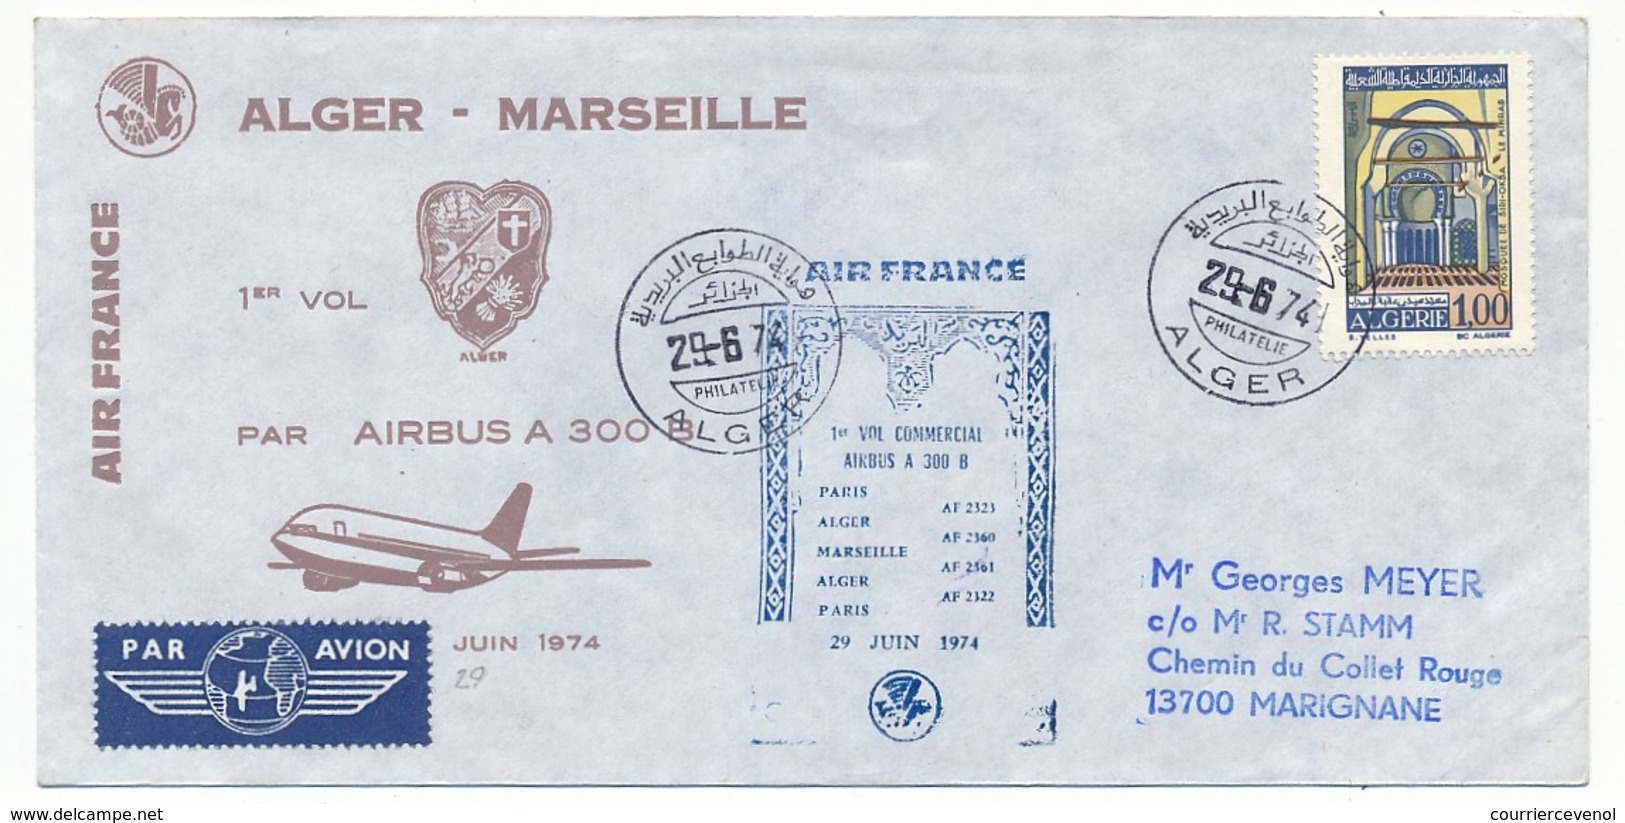 FRANCE - 2 Enveloppes - Marseille Alger (et Retour) Airbus 300B - 1974 - Primeros Vuelos